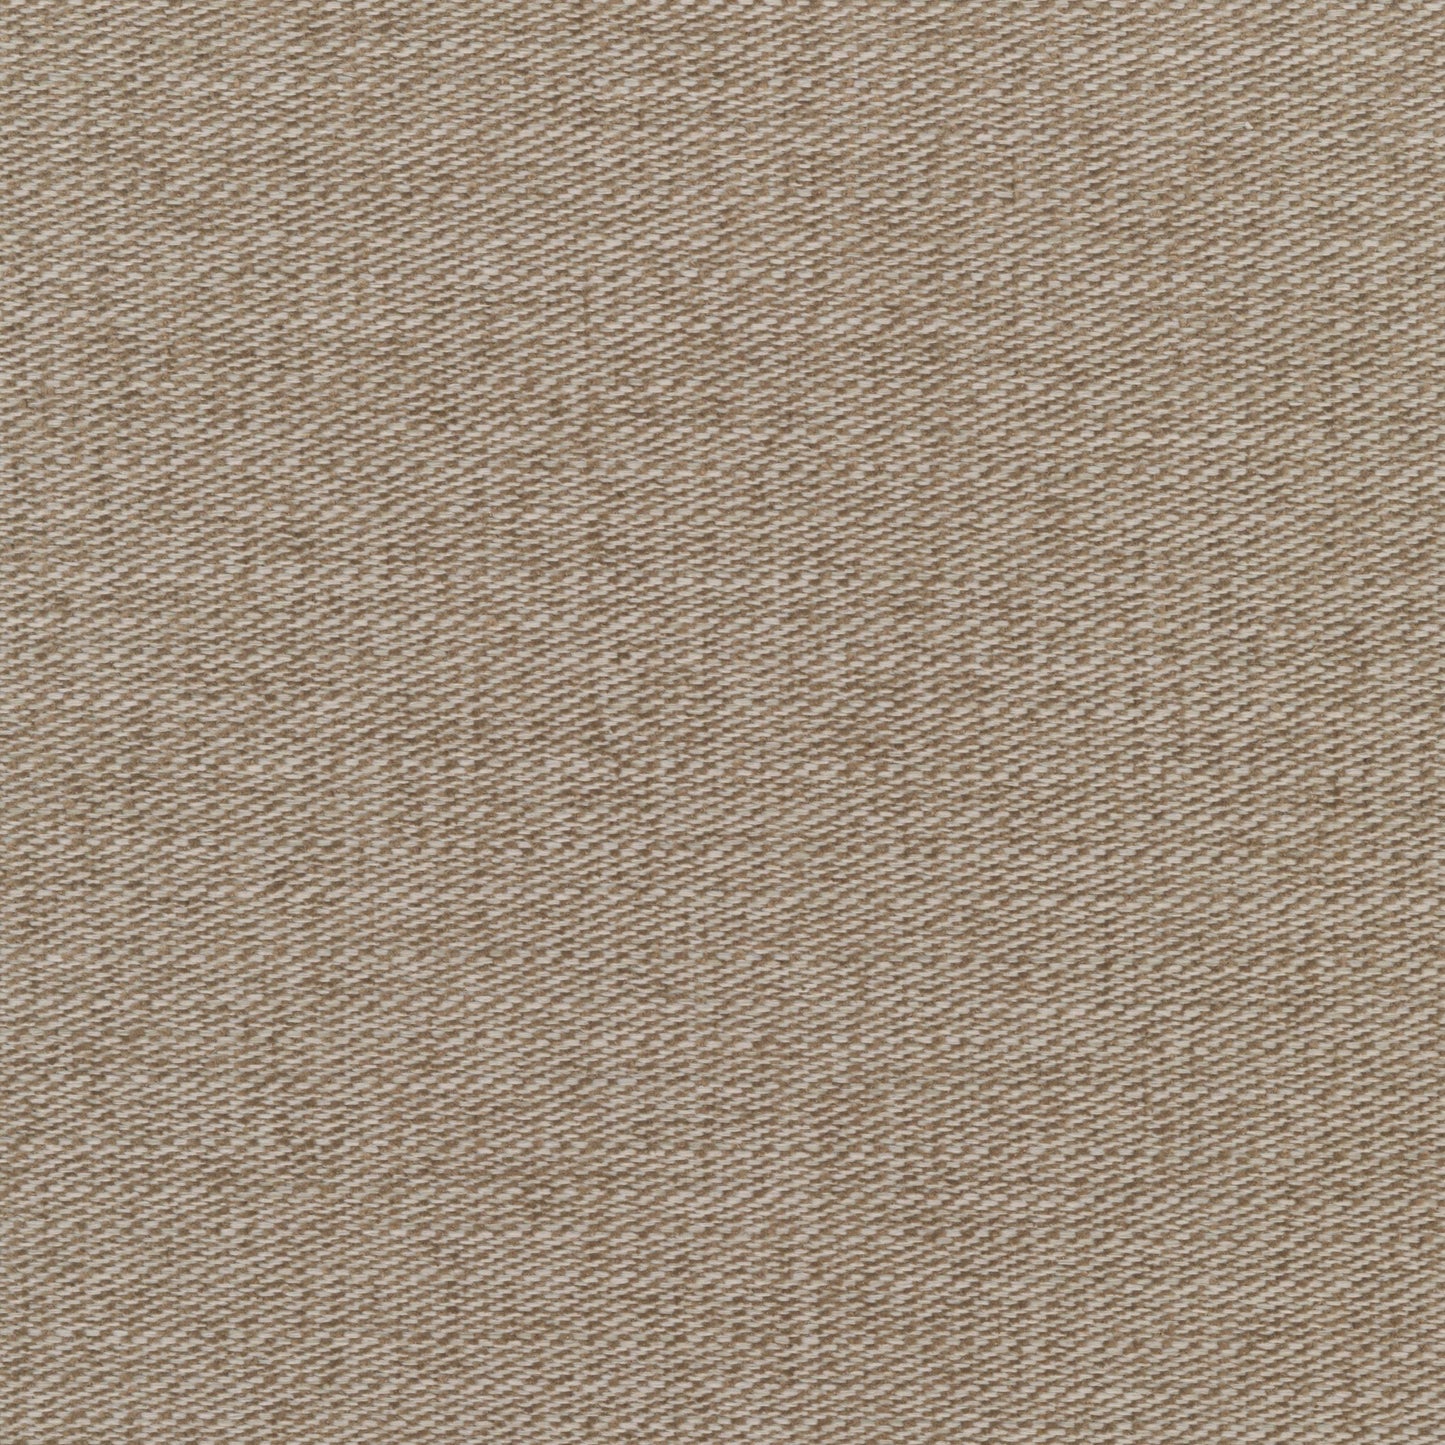 7627-91 Fabric